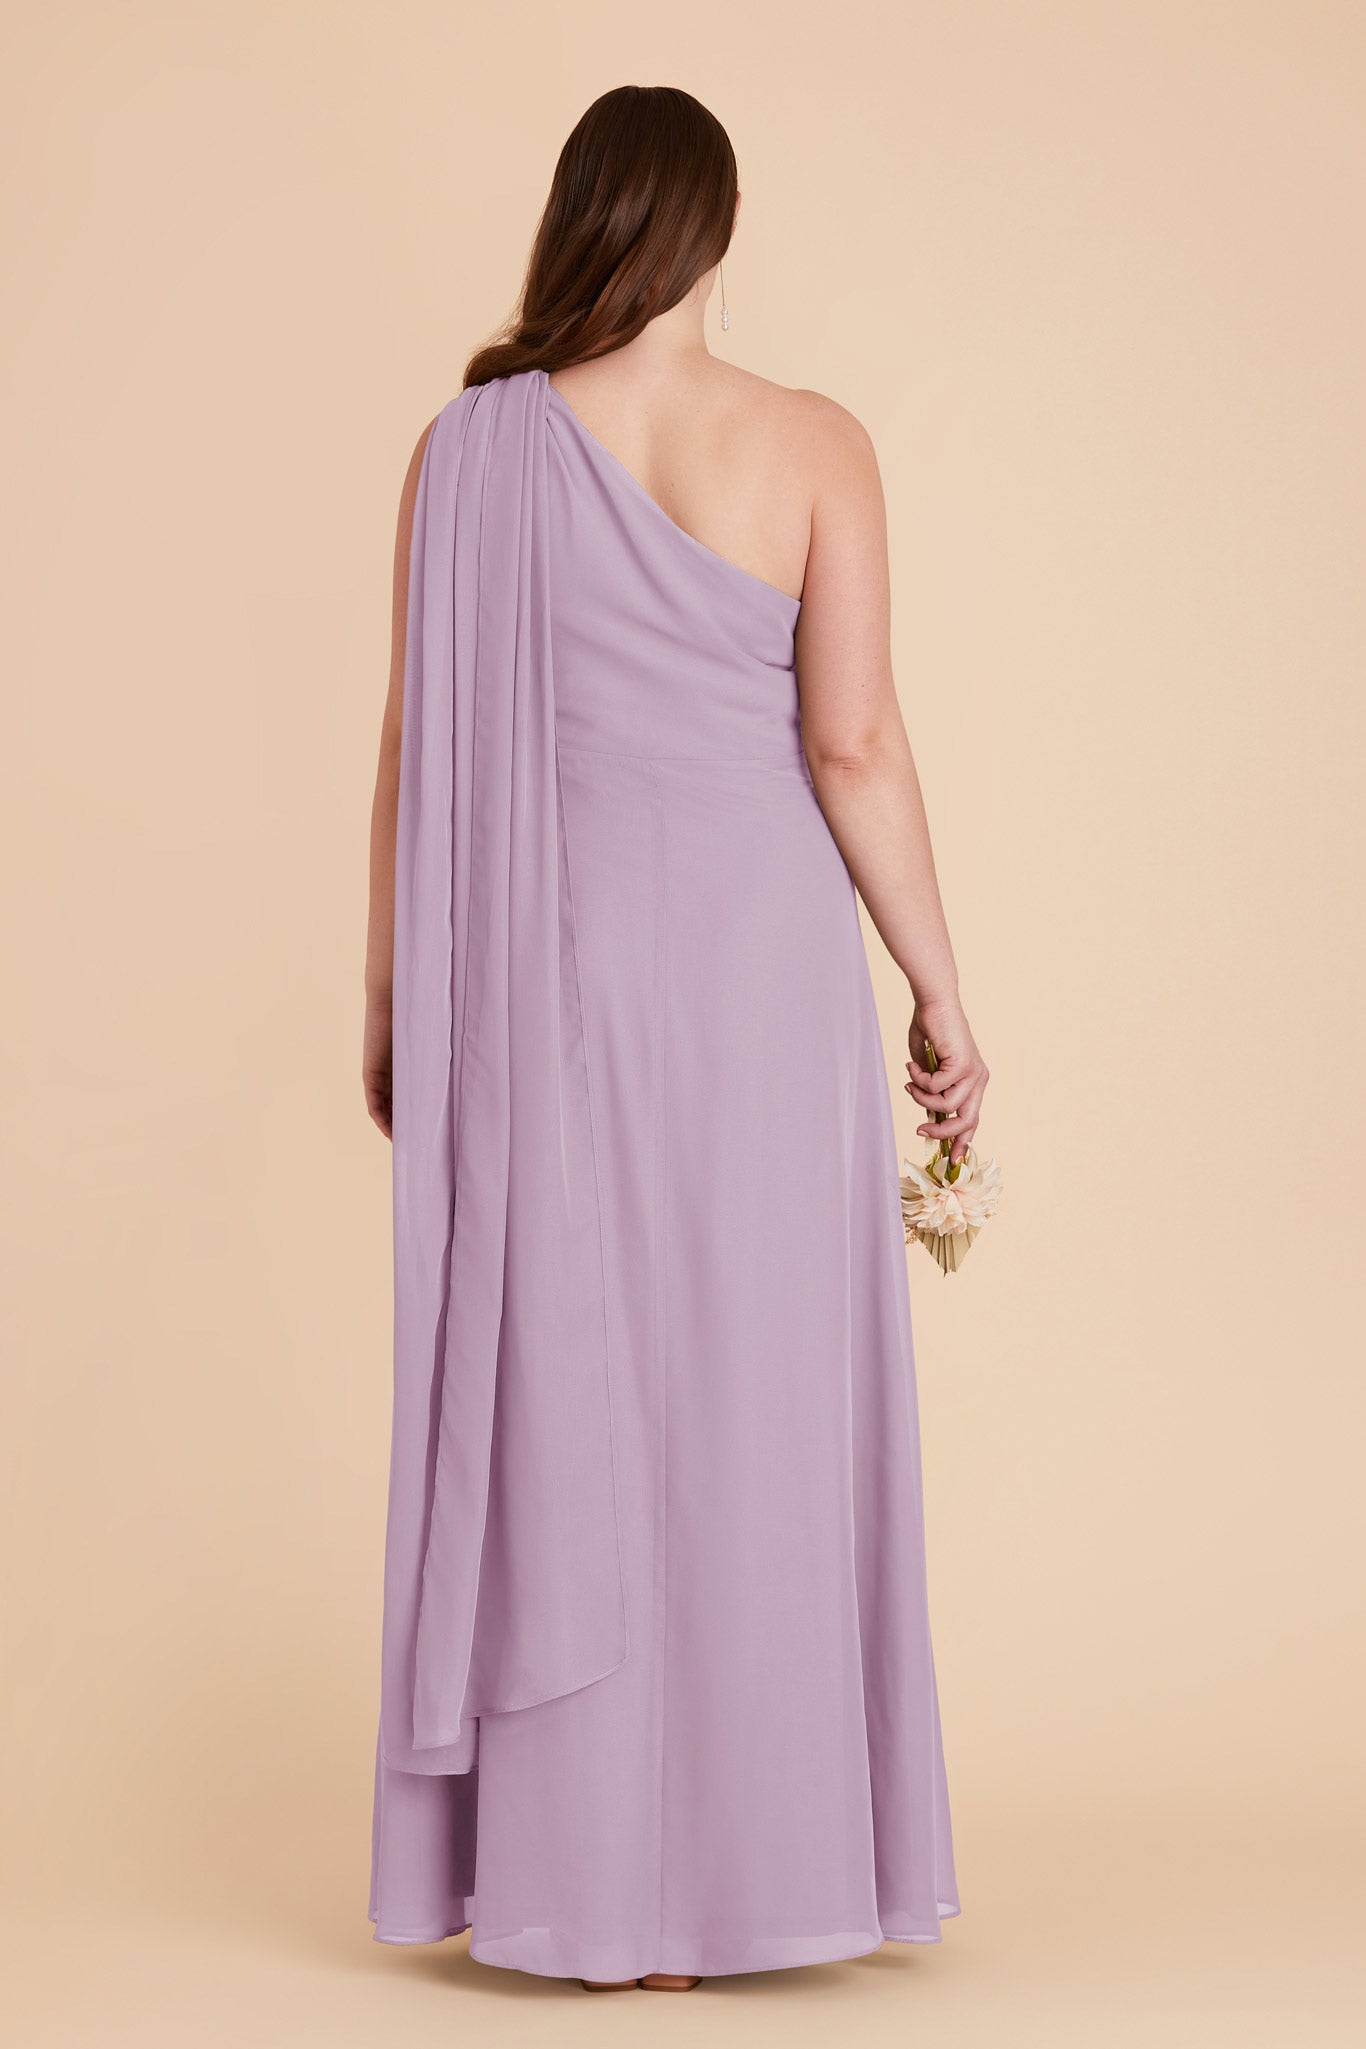 Lavender Melissa Chiffon Dress by Birdy Grey